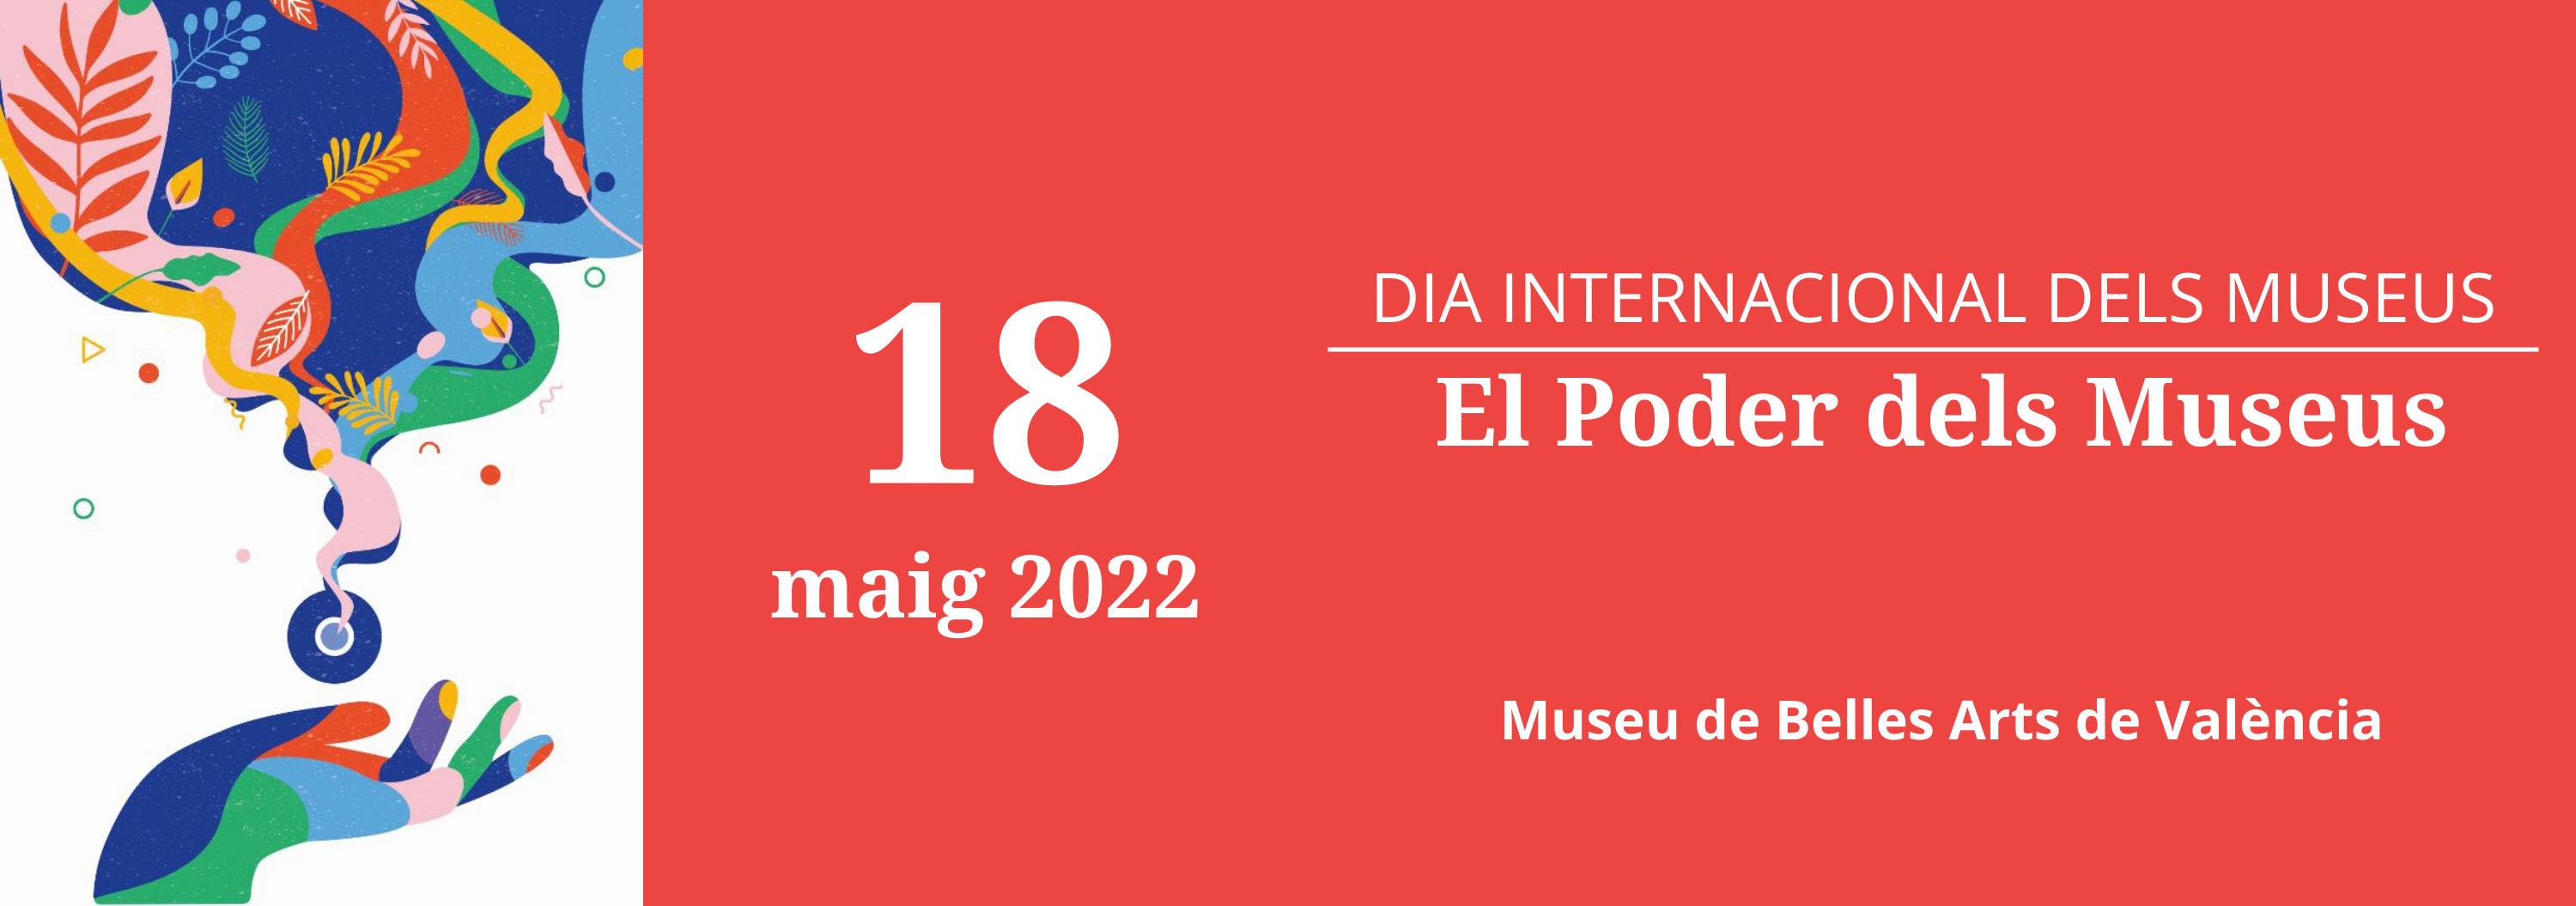 Dia Internacional dels Museus 2022